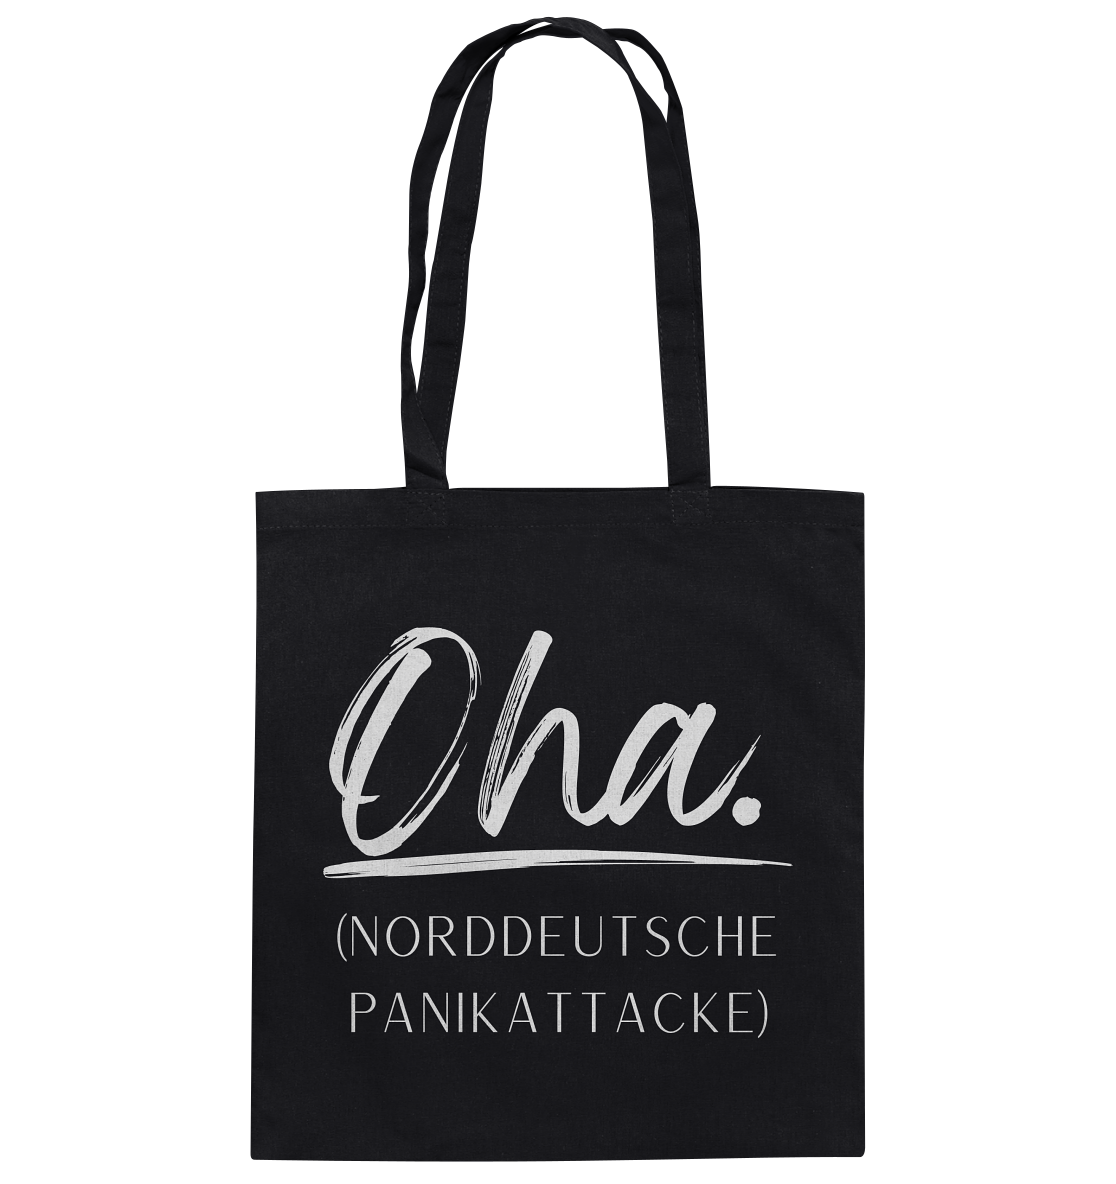 OHA. Norddeutsche Panikattacke  - Baumwolltasche